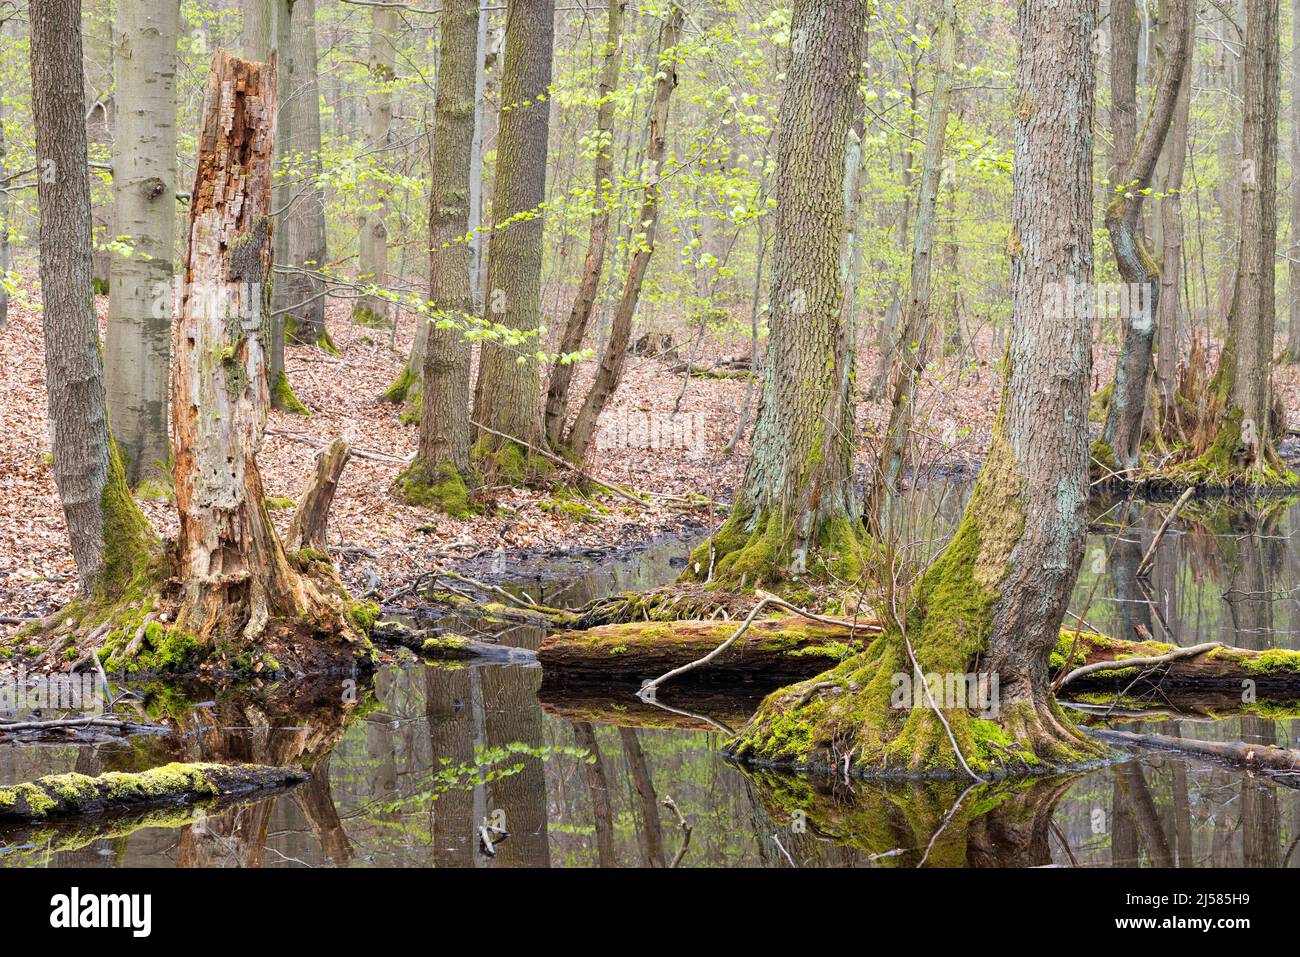 Erlen-Bruchwald, Schwarz-Erlen (Alnus glutinosa) stehen im Wasser, Nationalpark Hainich, Thueringen, Deutschland Stock Photo